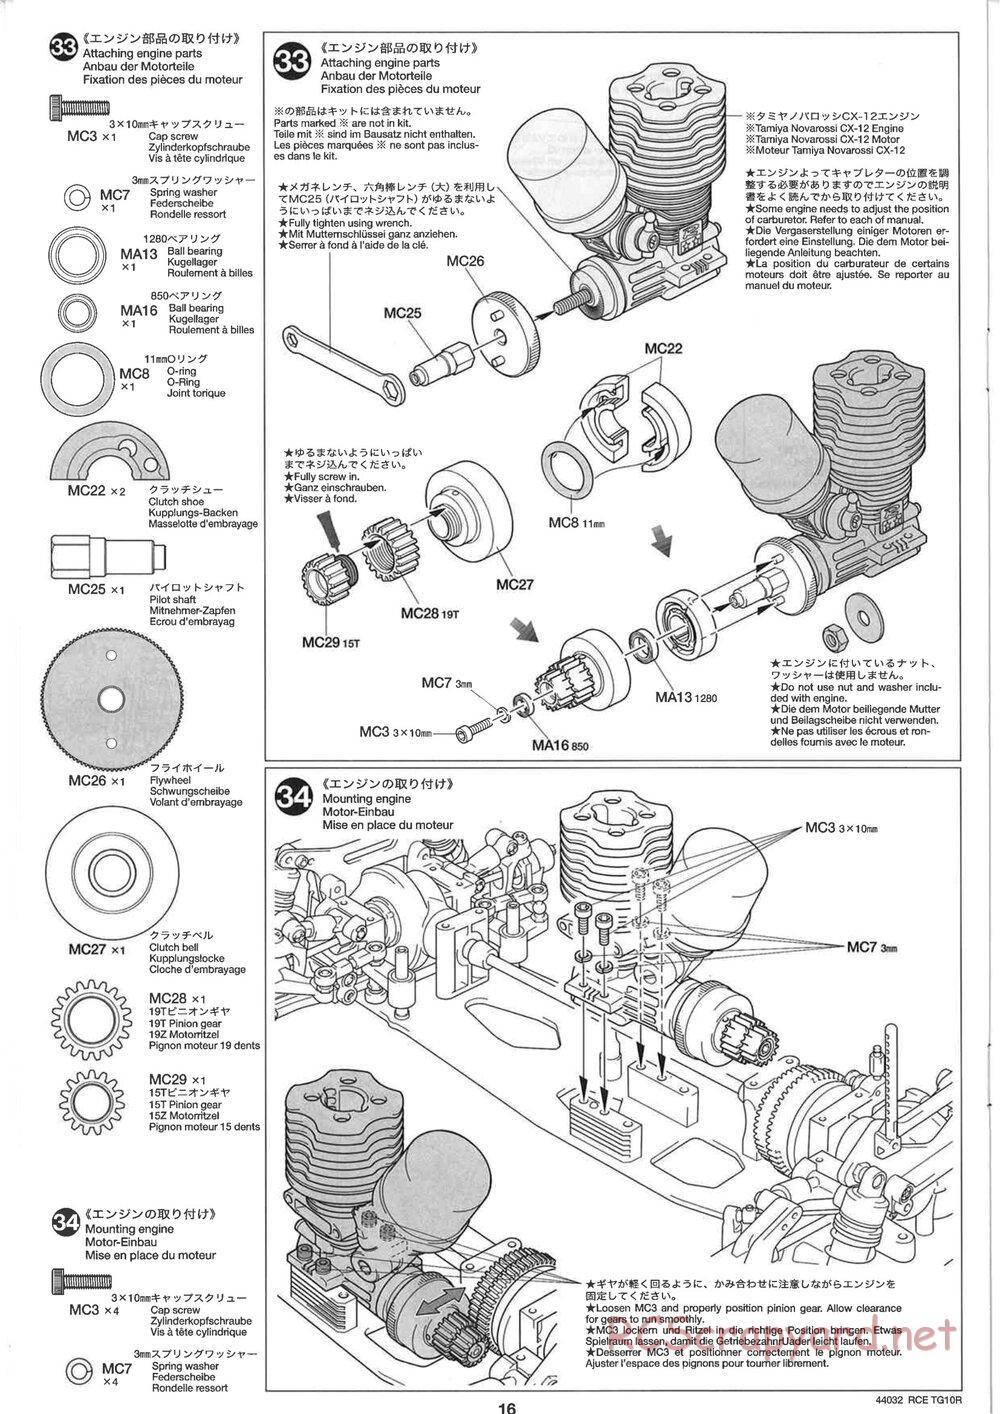 Tamiya - TG10R Chassis - Manual - Page 16